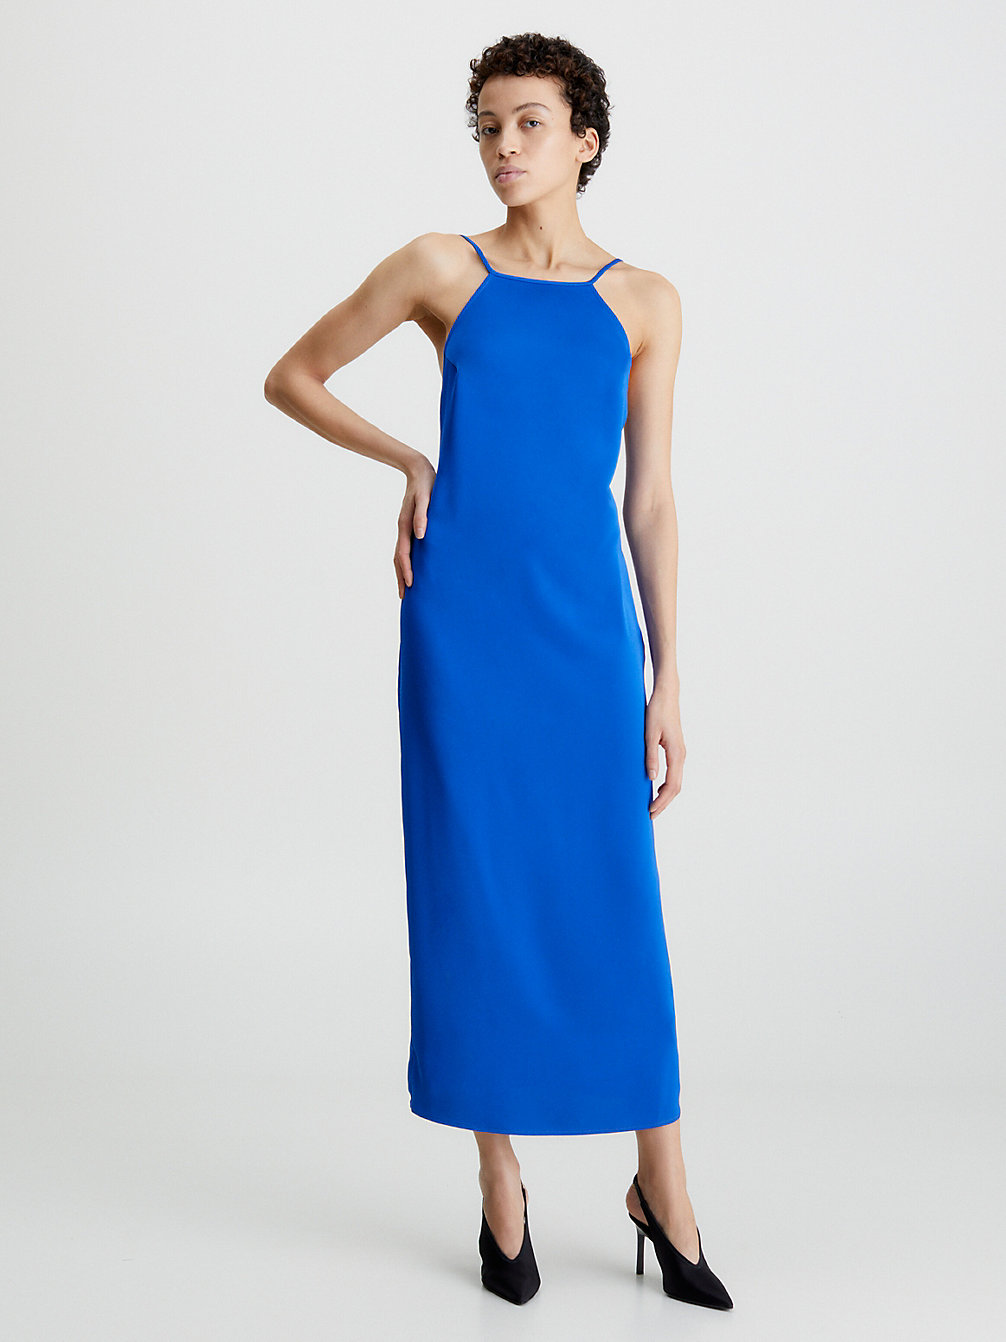 ULTRA BLUE > Wąska Sukienka Bez Pleców Z Dekoltem Typu Halter > undefined Kobiety - Calvin Klein